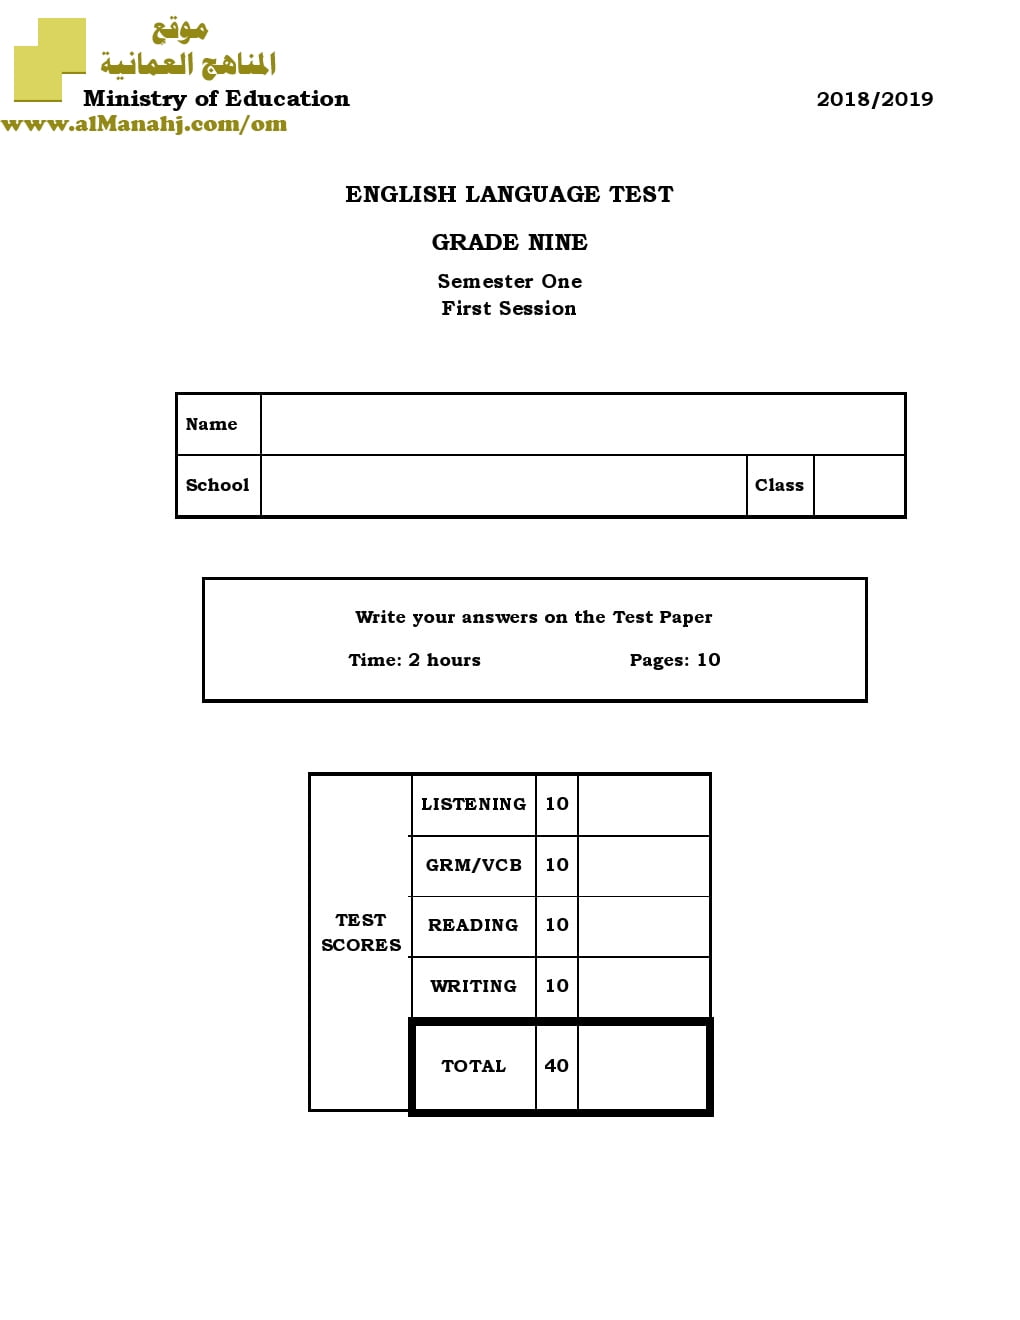 أسئلة وإجابة الامتحان الرسمي الدور الأول والثاني (لغة انجليزية) التاسع